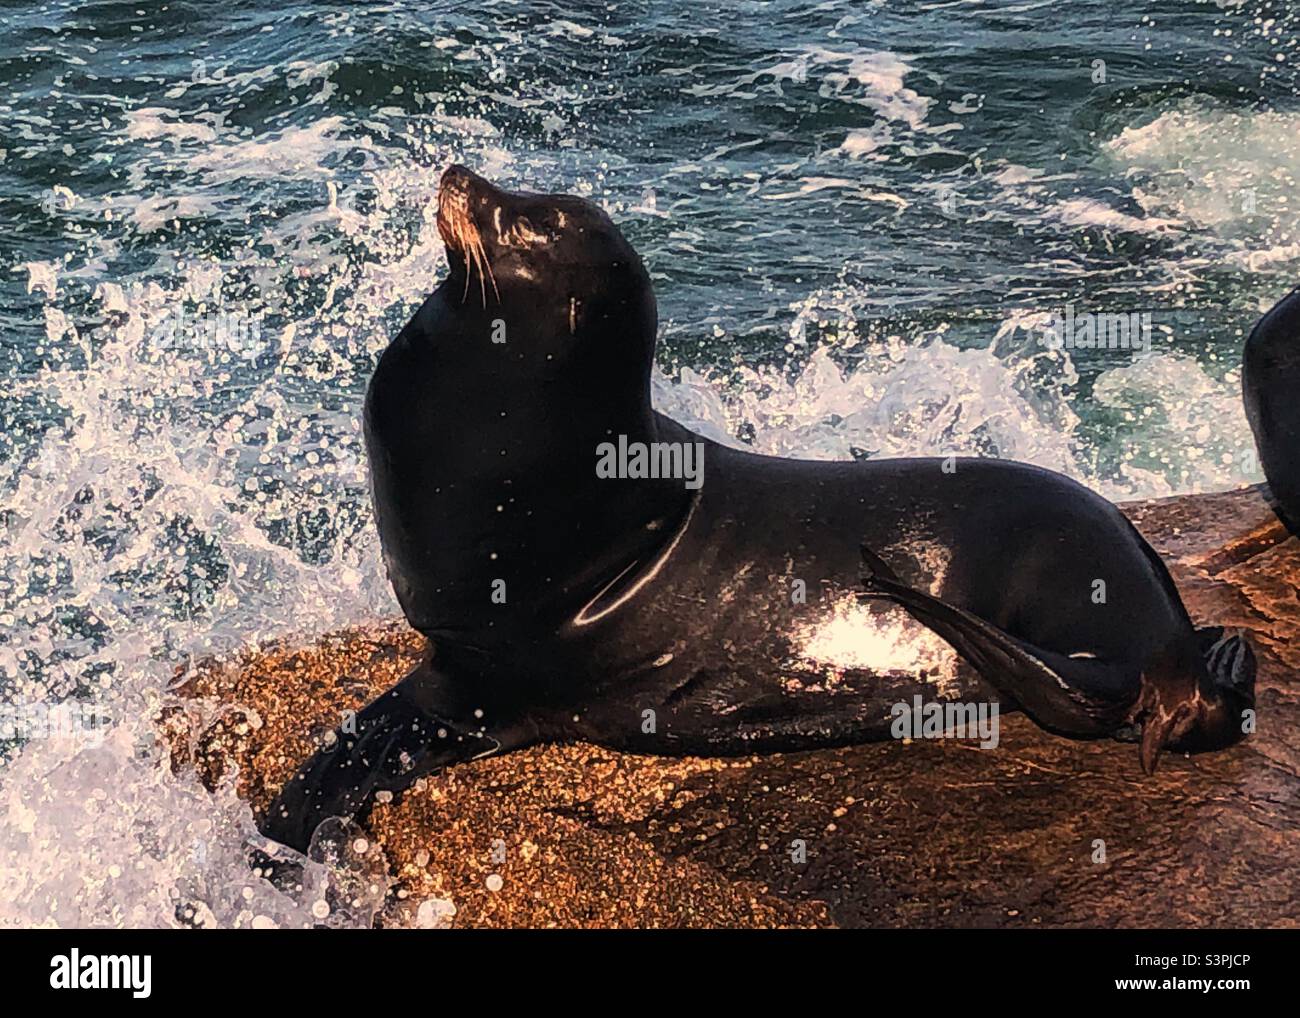 Monterey: California Sealion Stock Photo